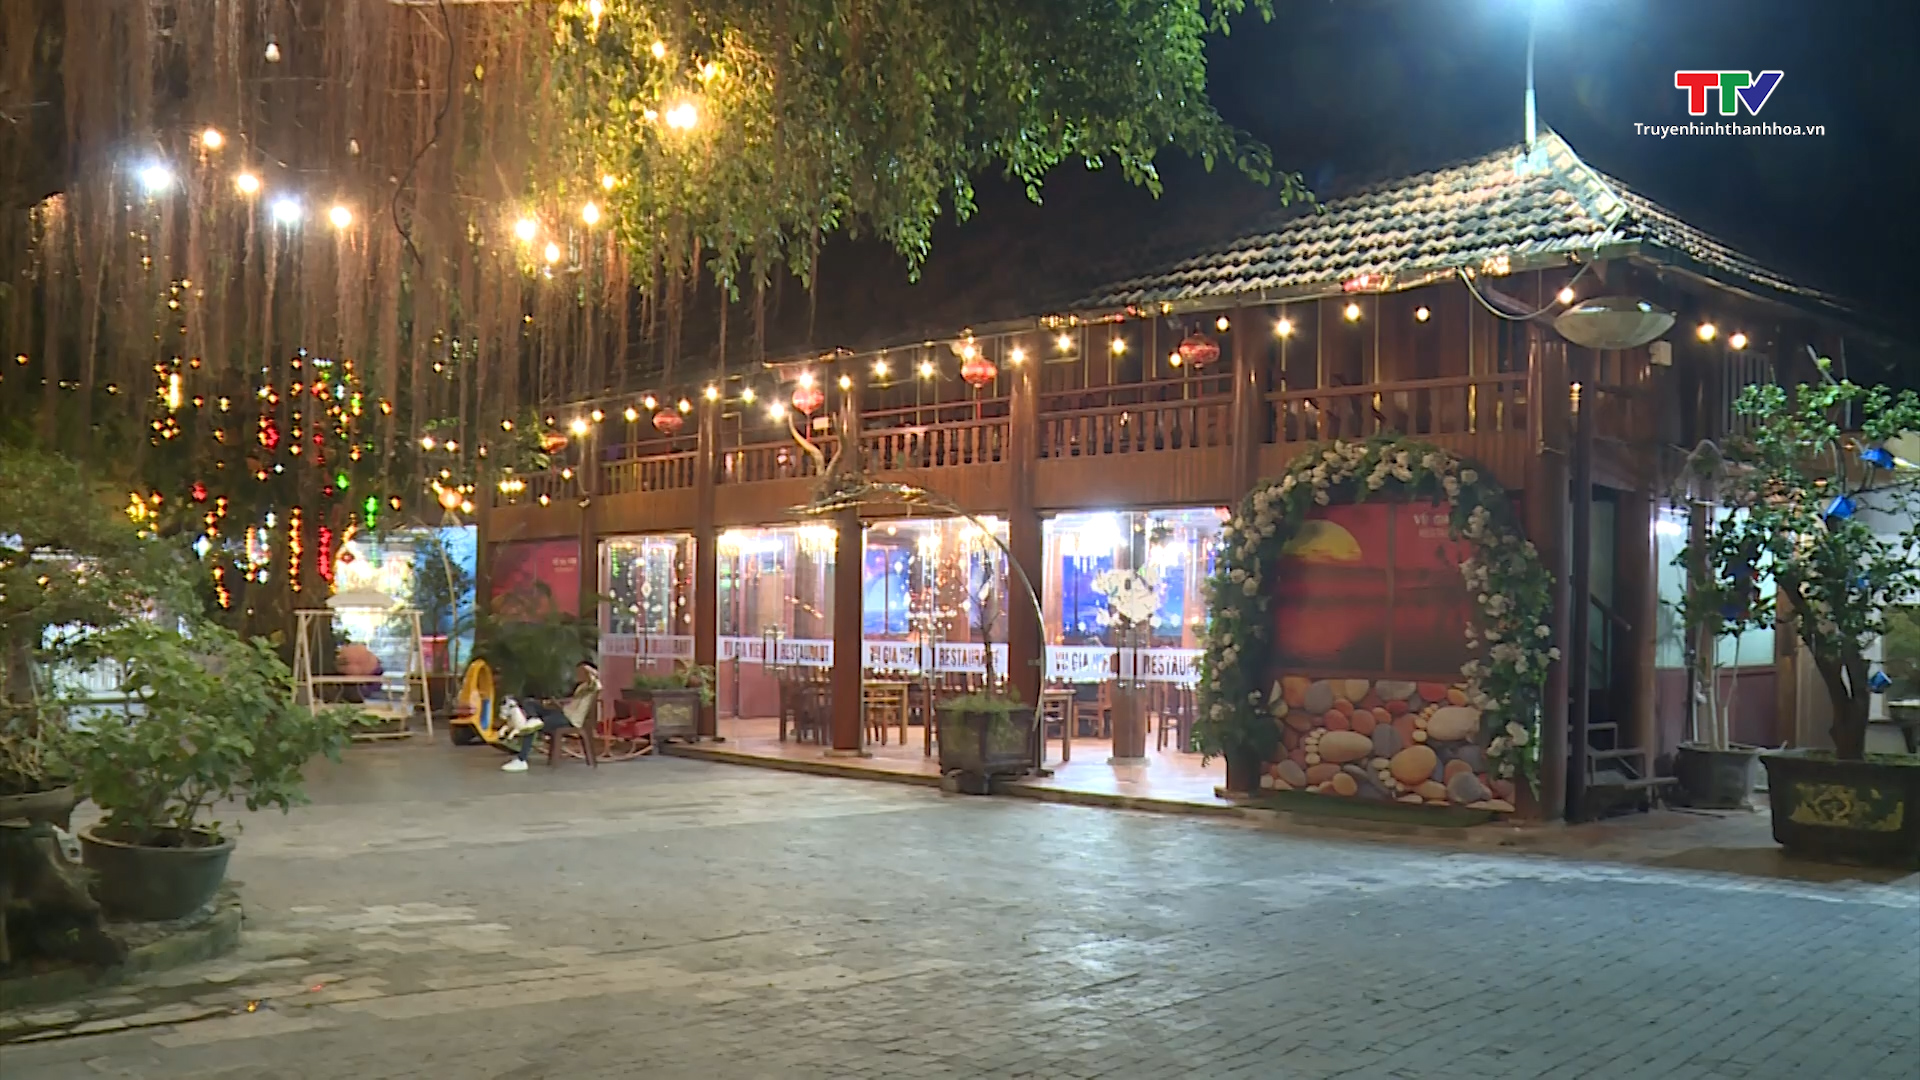 Xu hướng thiết kế không gian mở tại các nhà hàng trên địa bàn thành phố Thanh Hóa - Ảnh 4.